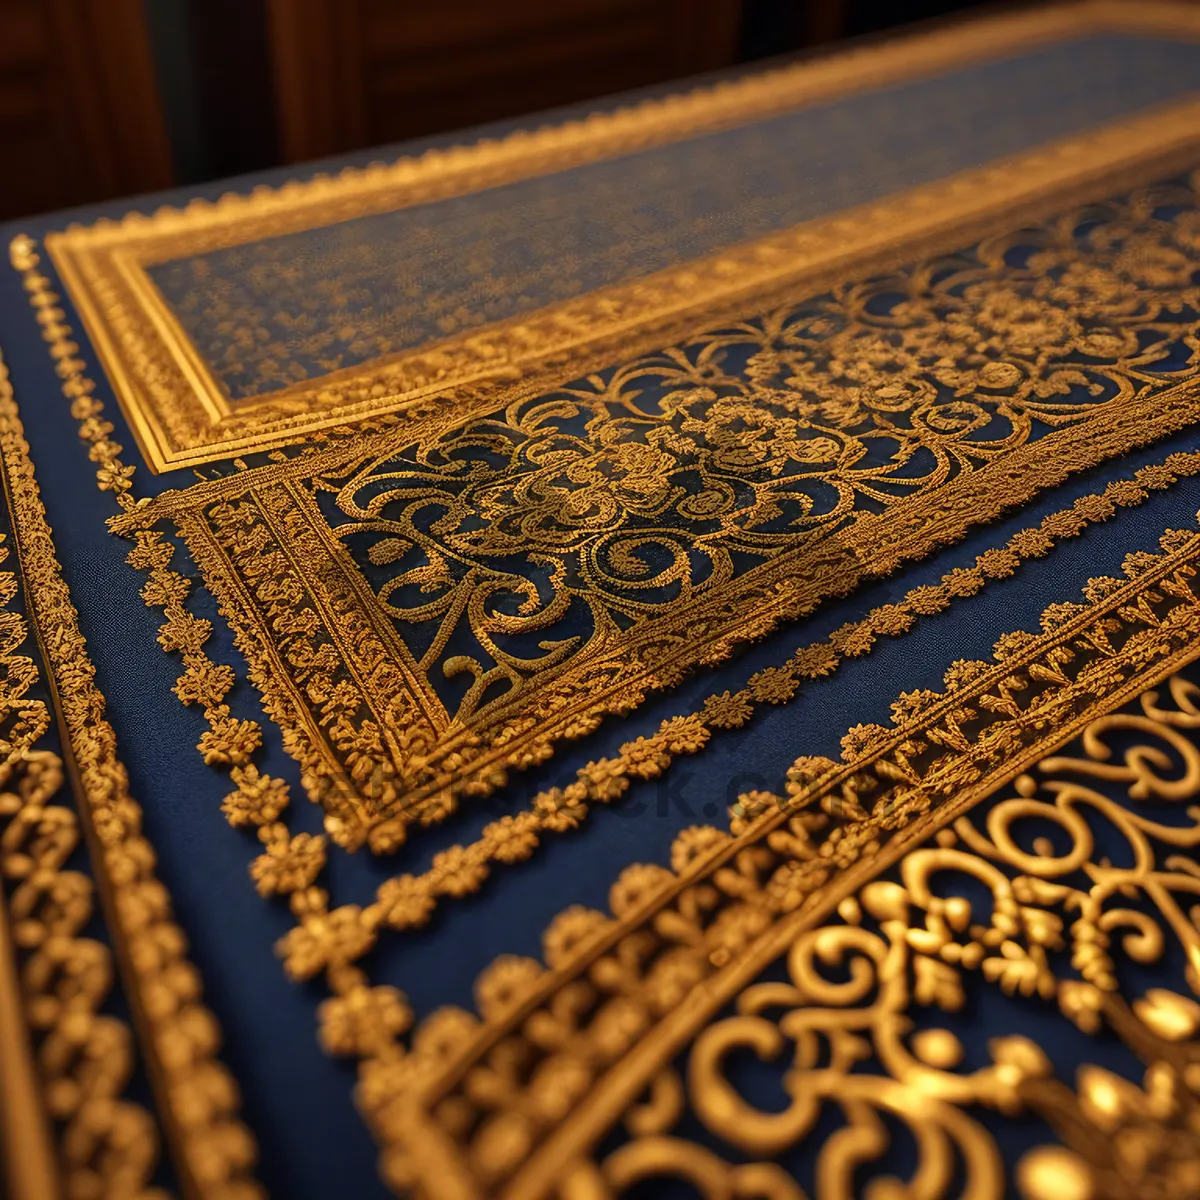 Picture of Antique Arabesque Prayer Rug - Ornate Floor Cover